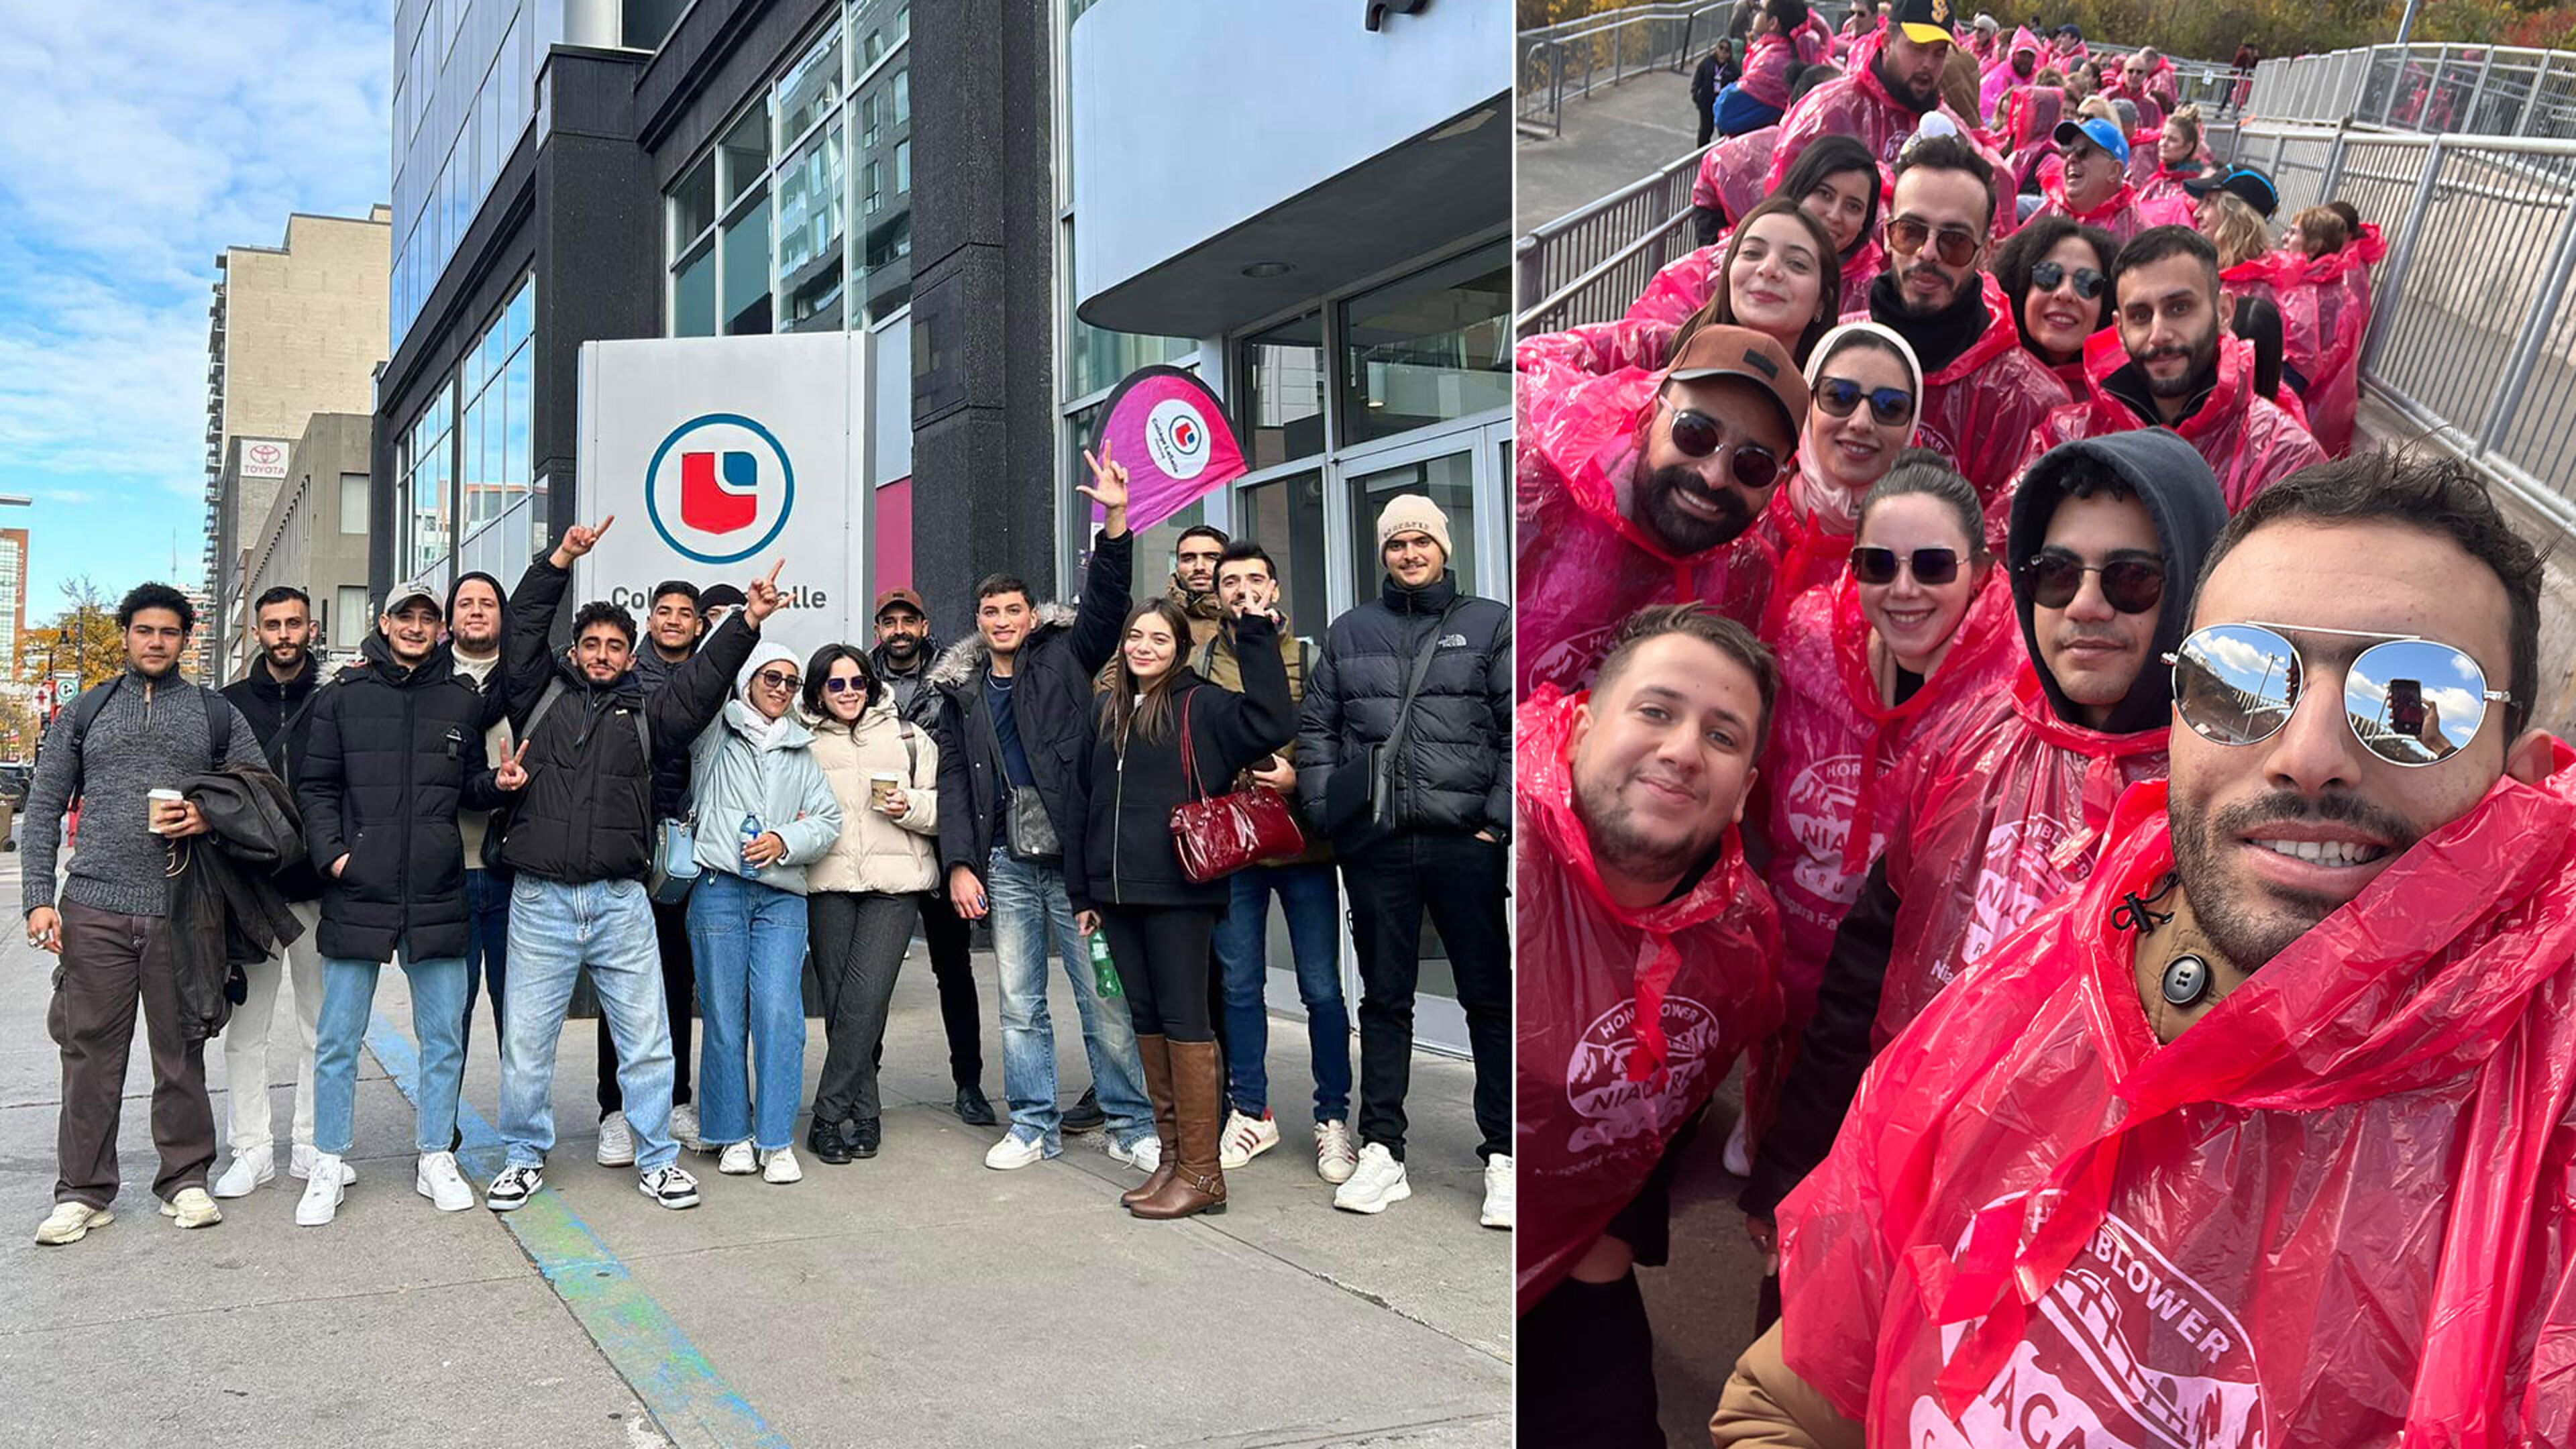 L'image de gauche montre des étudiants devant le Collège LaSalle ; à droite, ils portent des ponchos roses, probablement sur un site touristique.